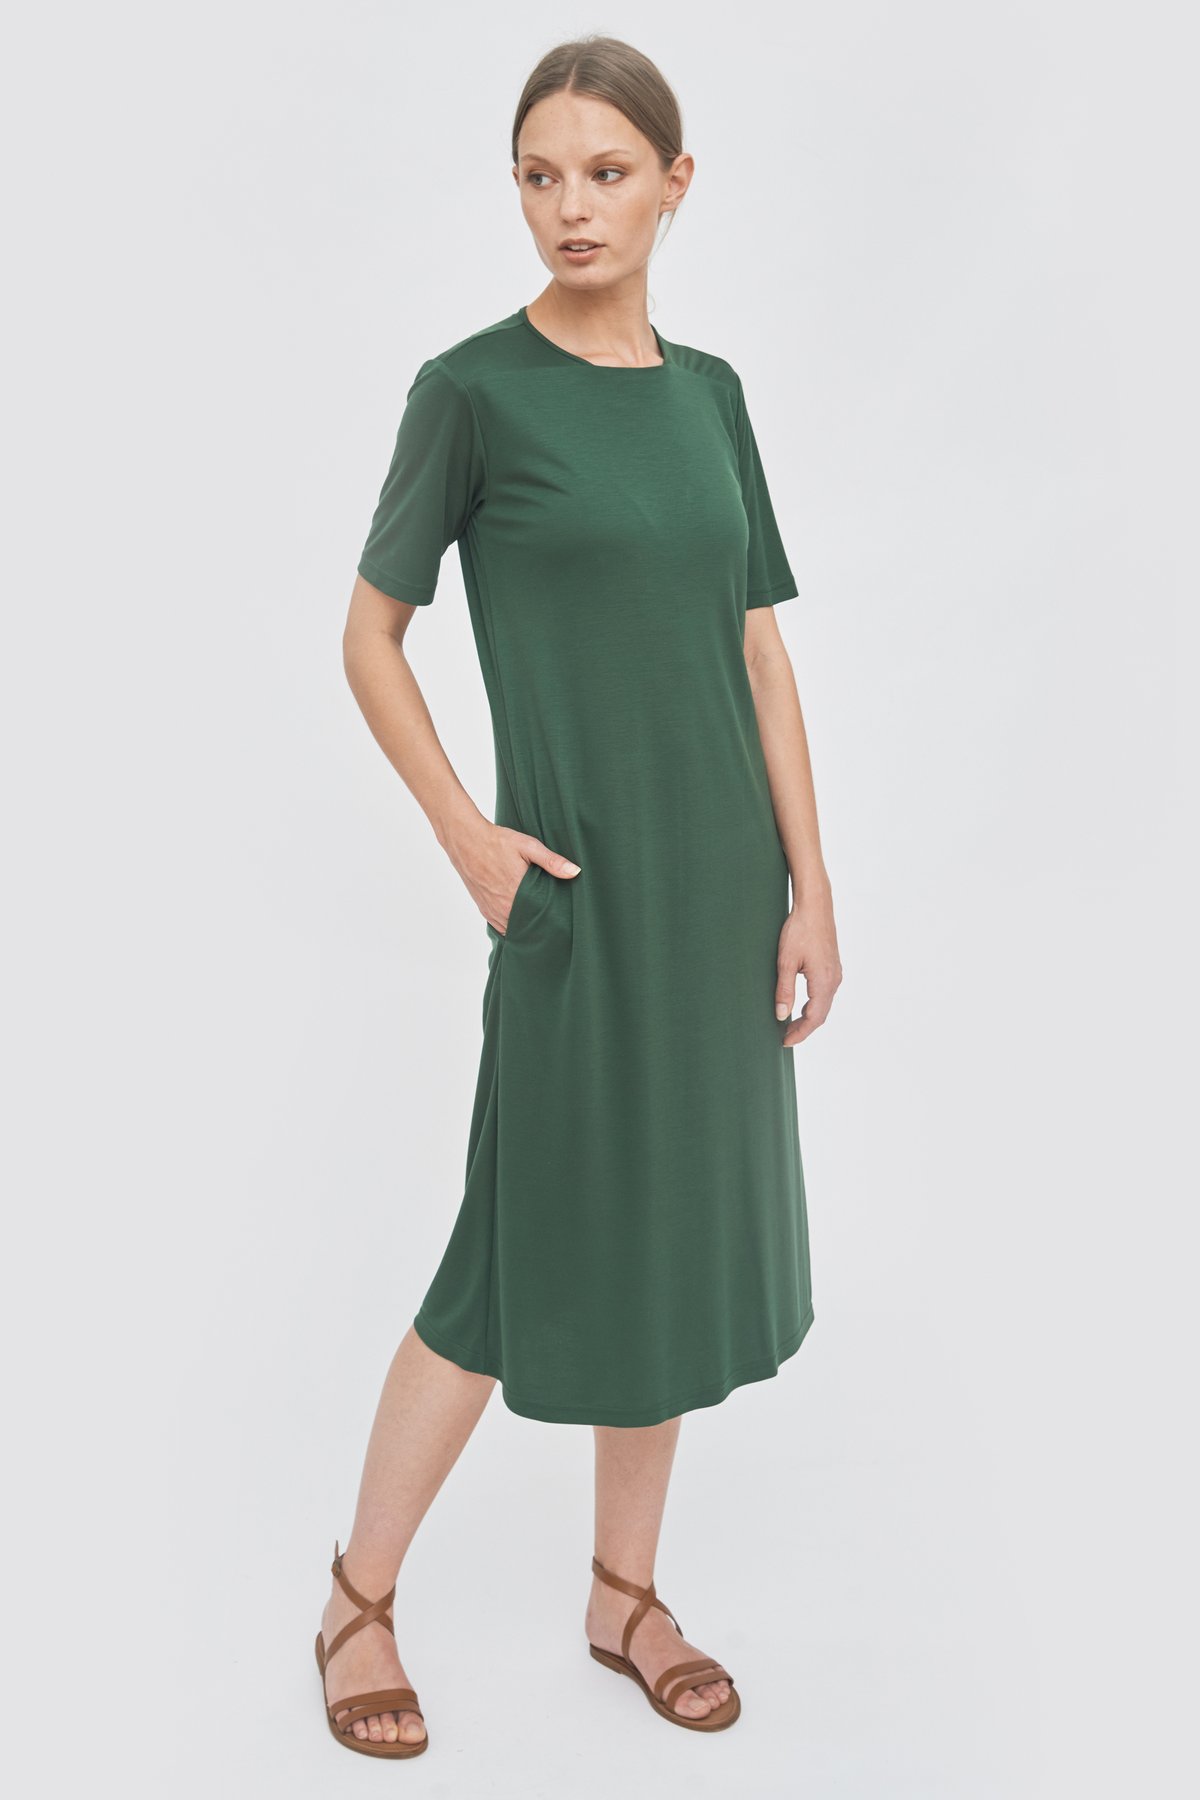 Straight-neckline-detail-dress-green-1_1800x1800